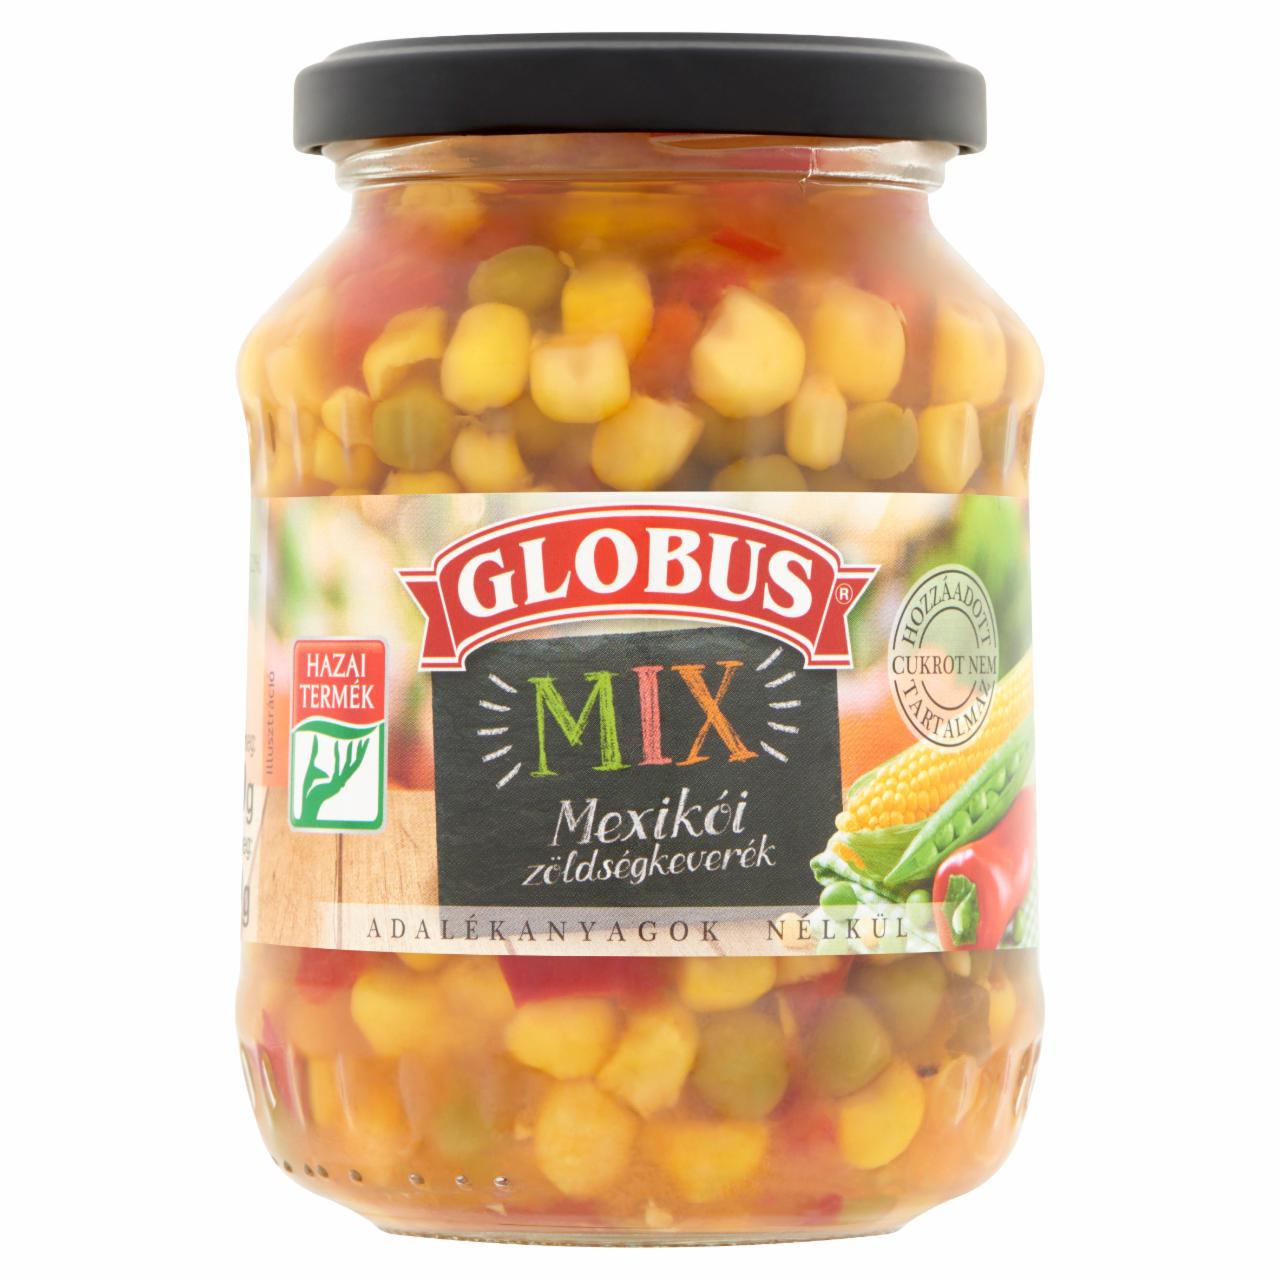 Képek - Globus Mix mexikói zöldségkeverék 330 g